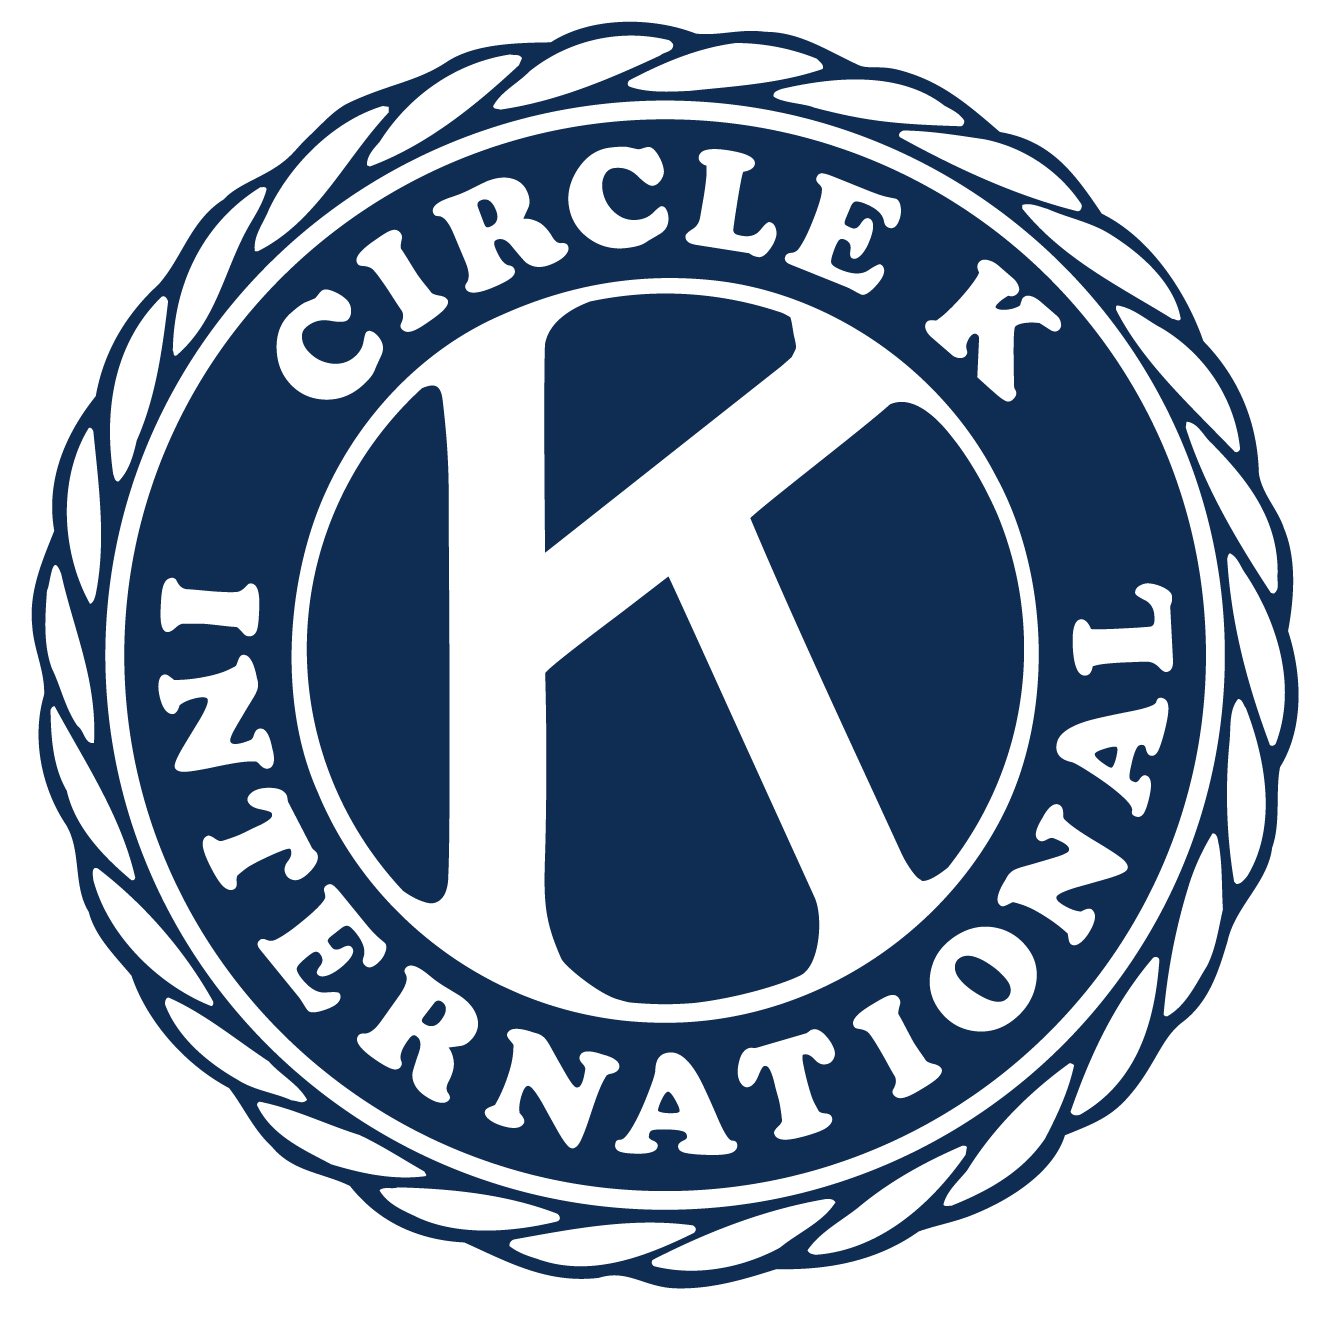 Circle K Logo - Circle K